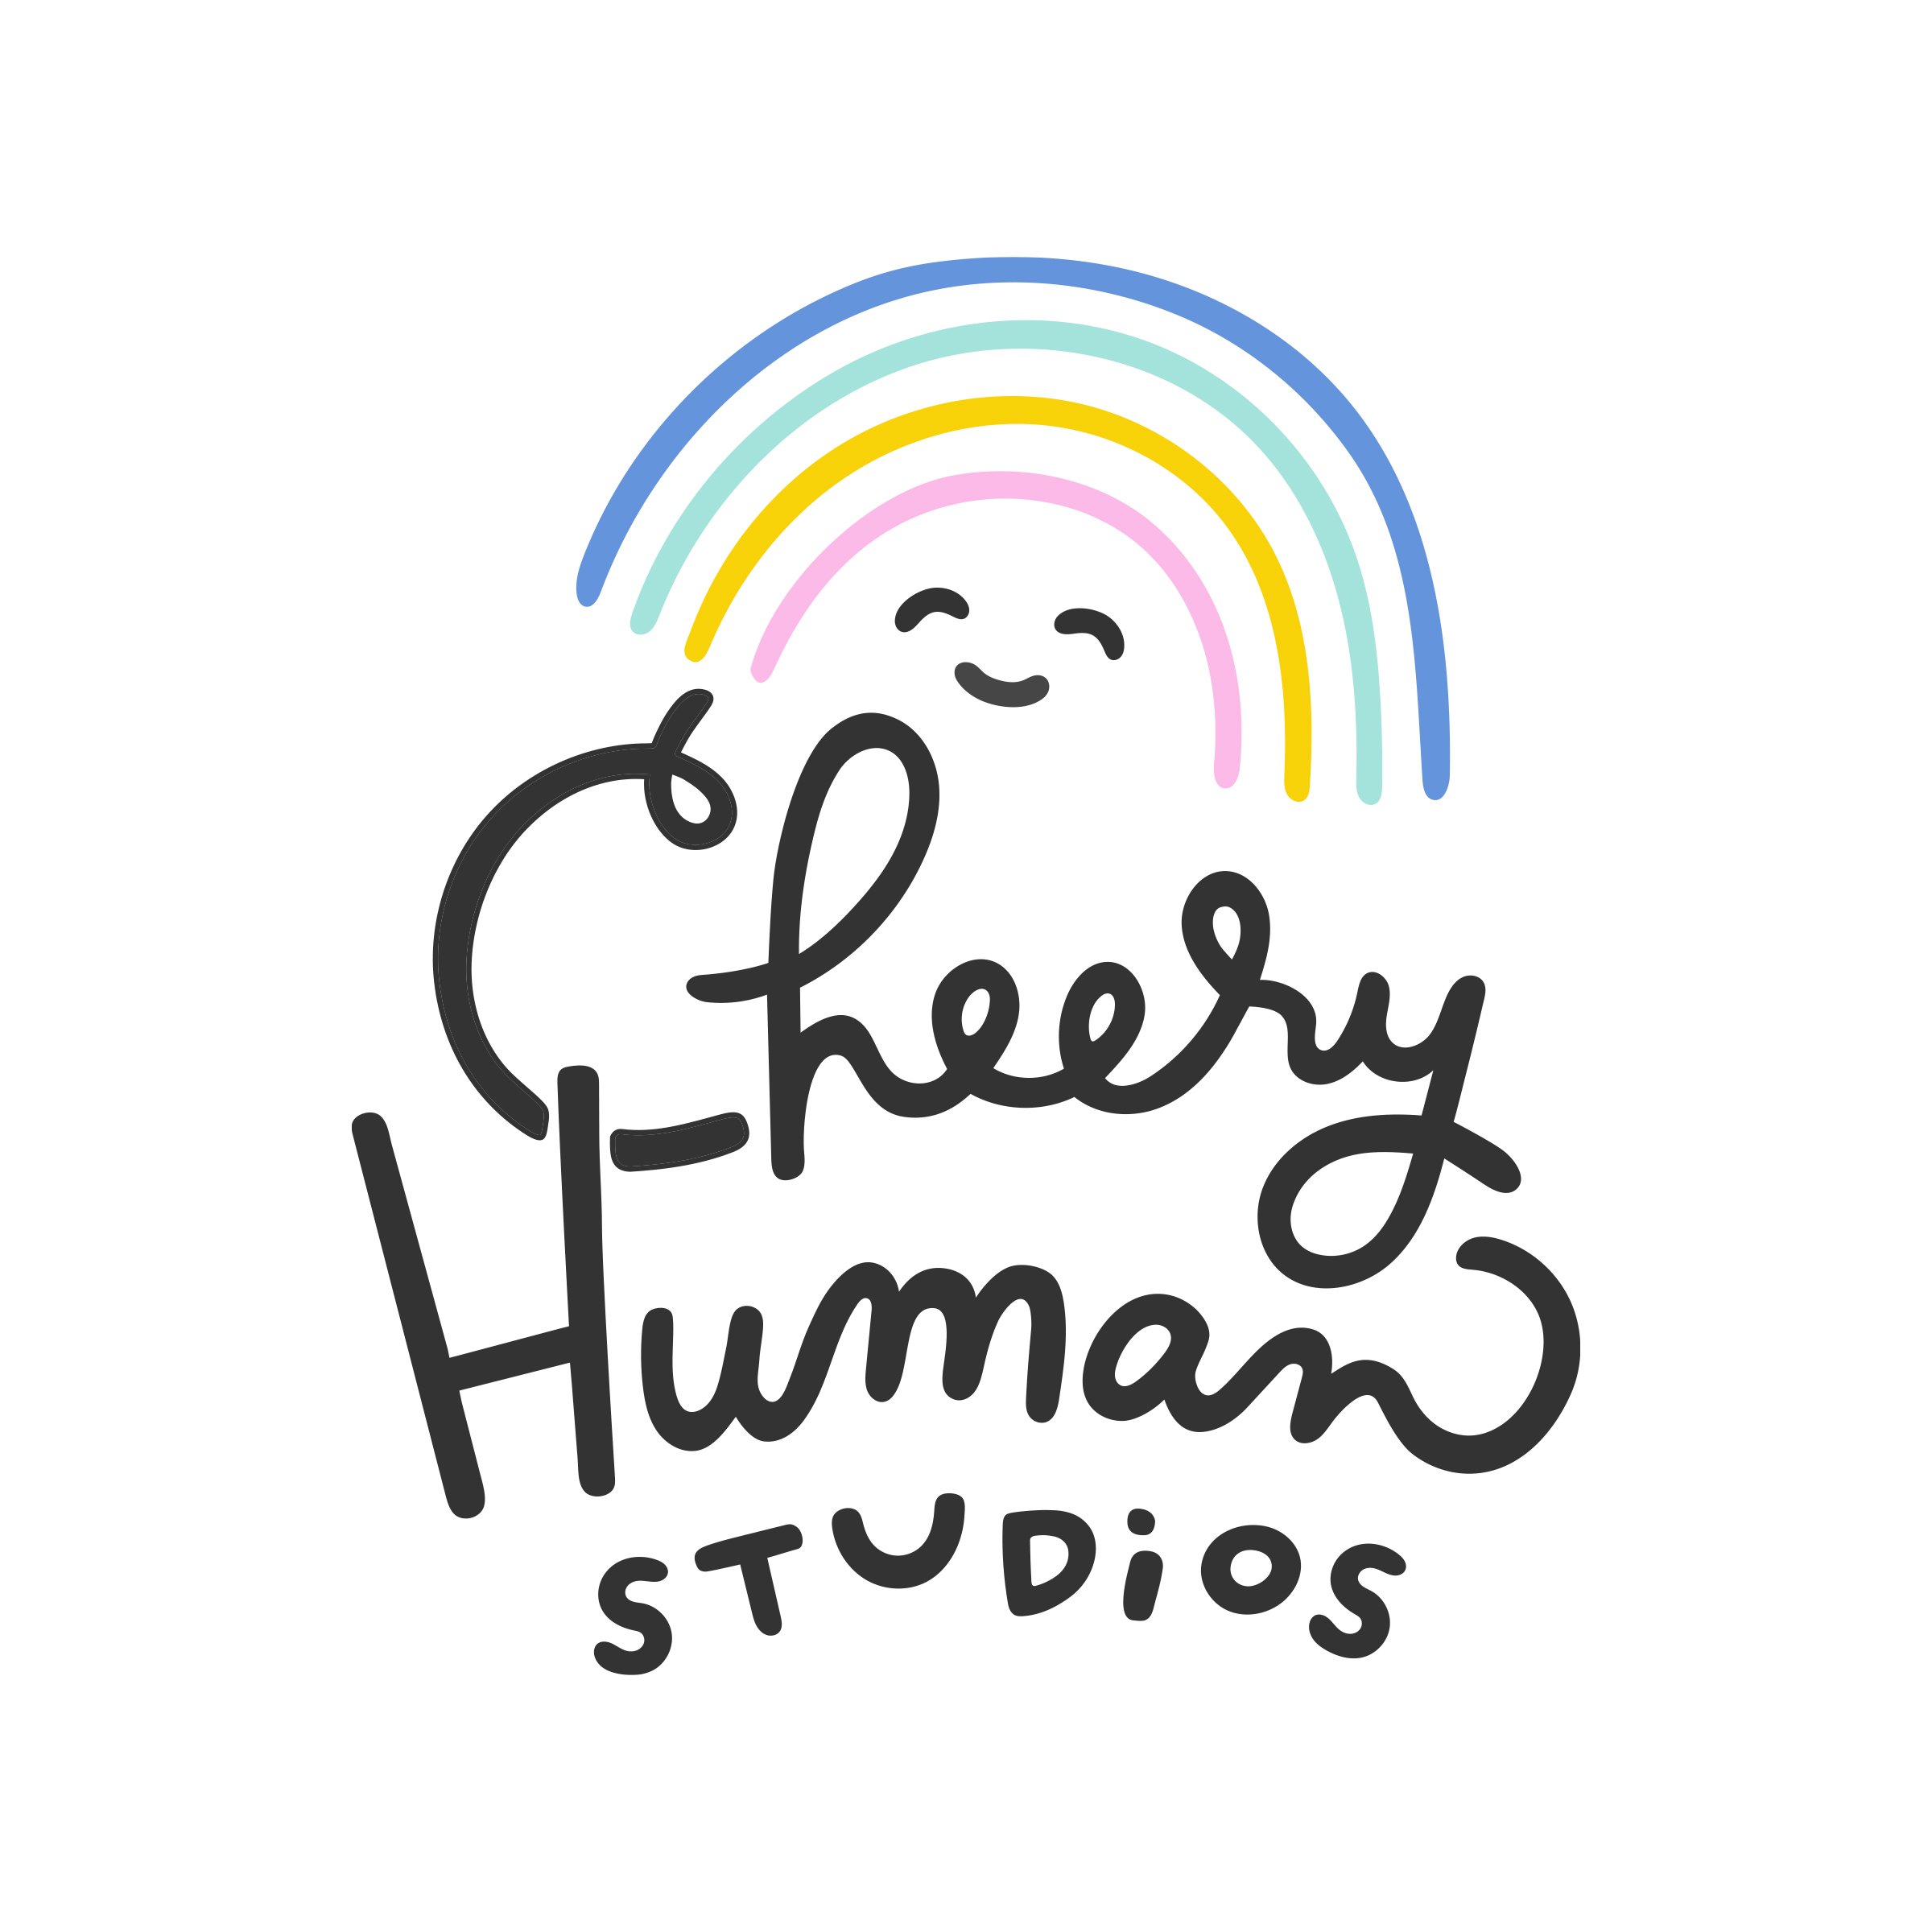 Cheery Human Studios